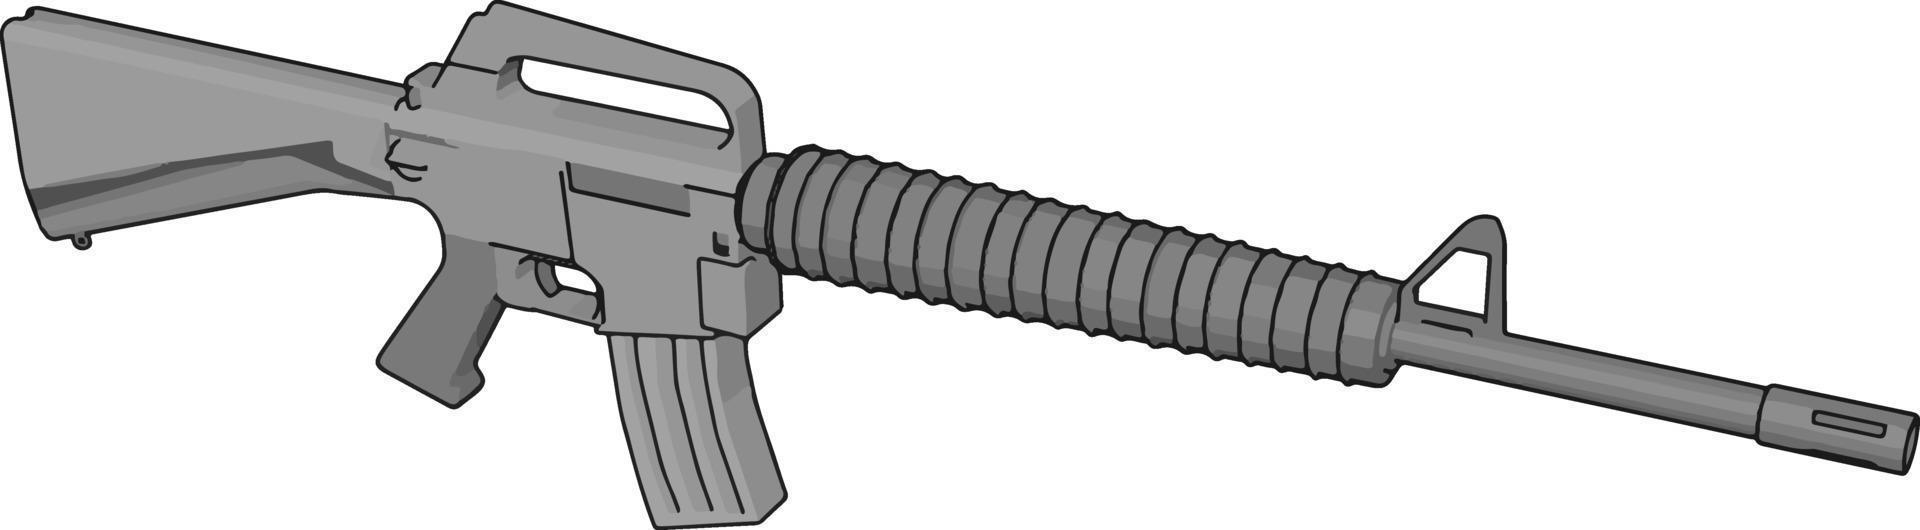 militär gevär pistol, illustration, vektor på vit bakgrund.